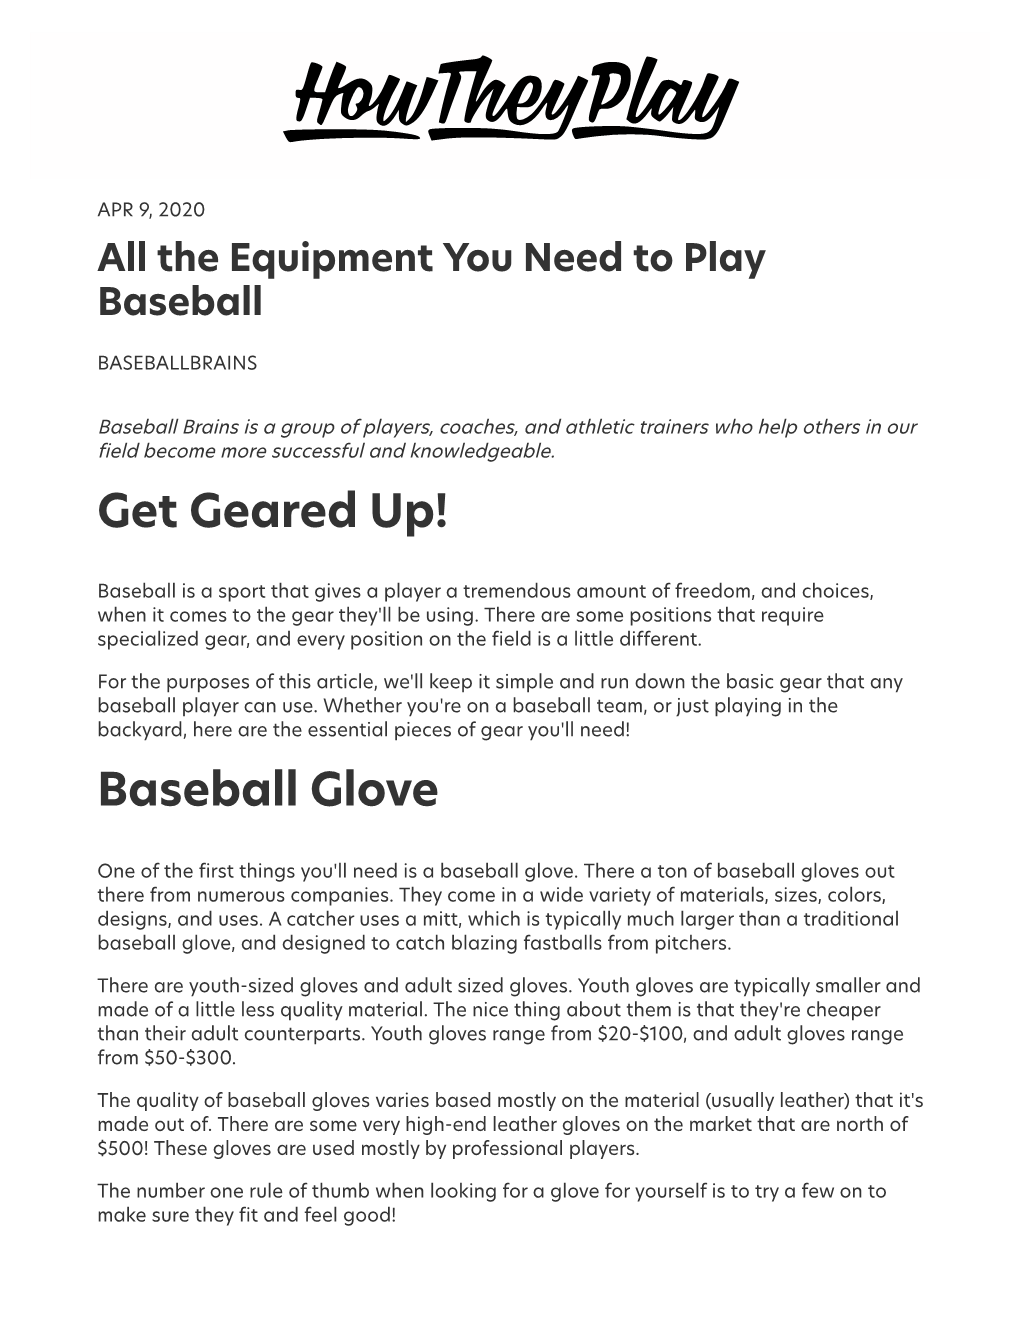 Get Geared Up! Baseball Glove